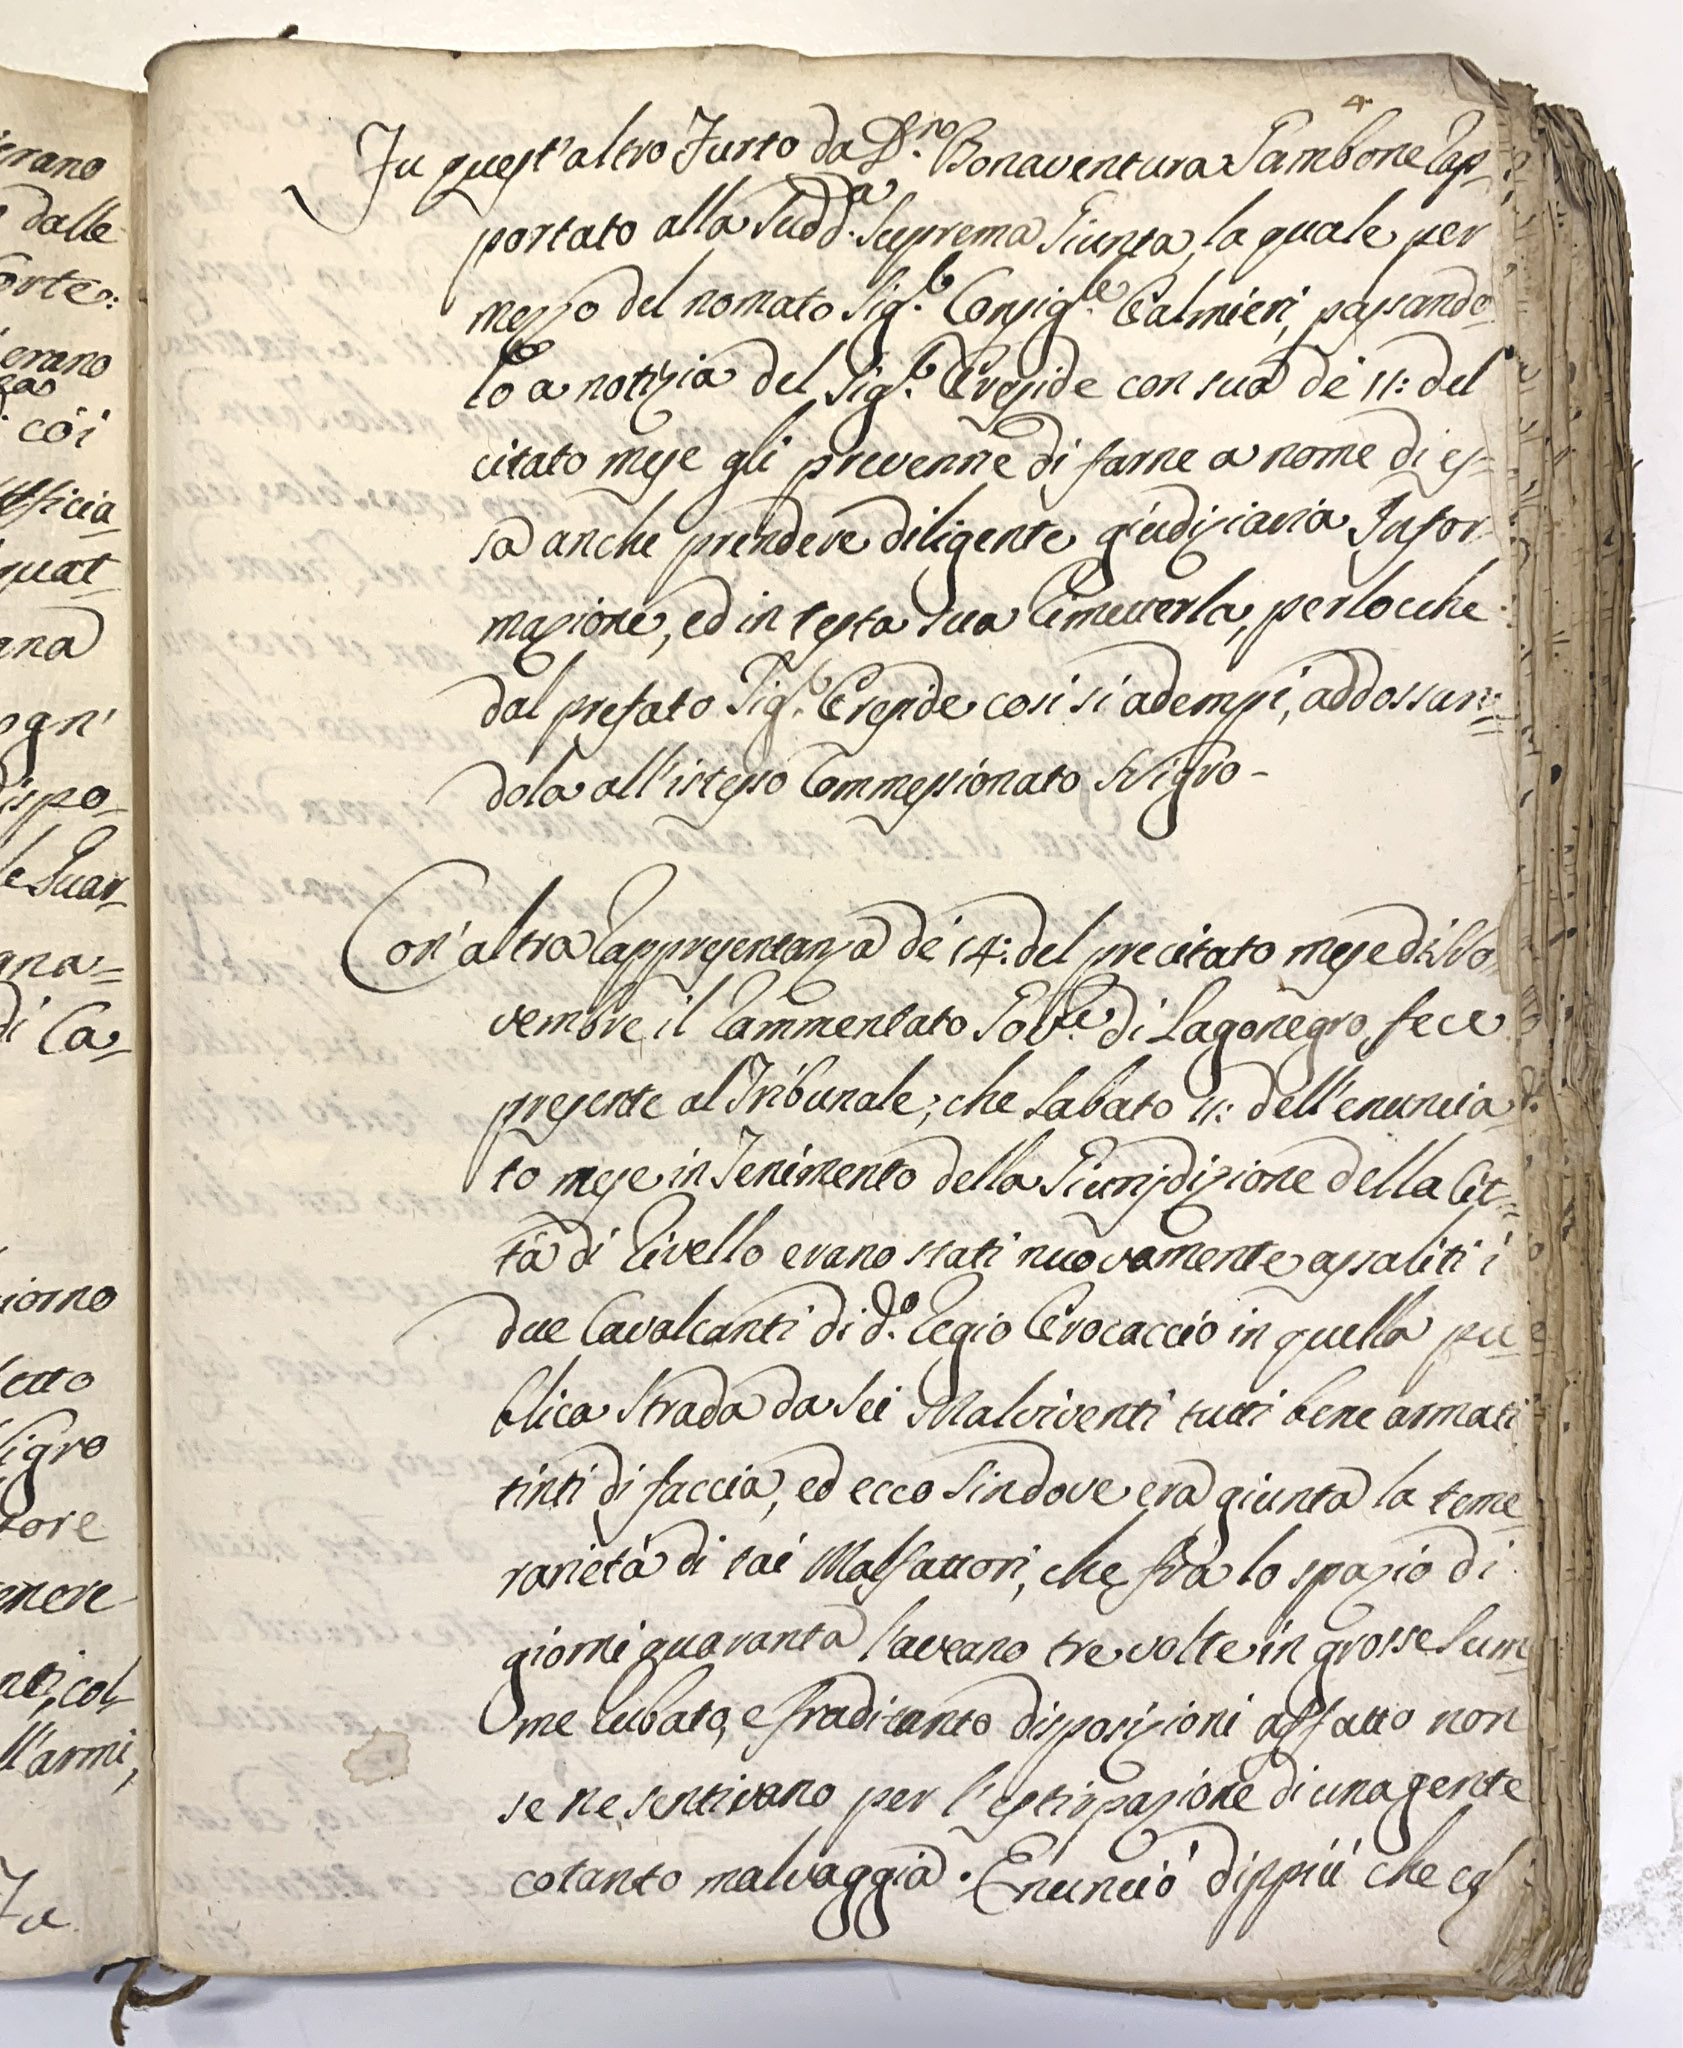 Relazione del governatore della città di Lagonegro al tribunale della città di Matera  del 14 novembre 1786 per il furto avvenuto l’11 novembre precedente